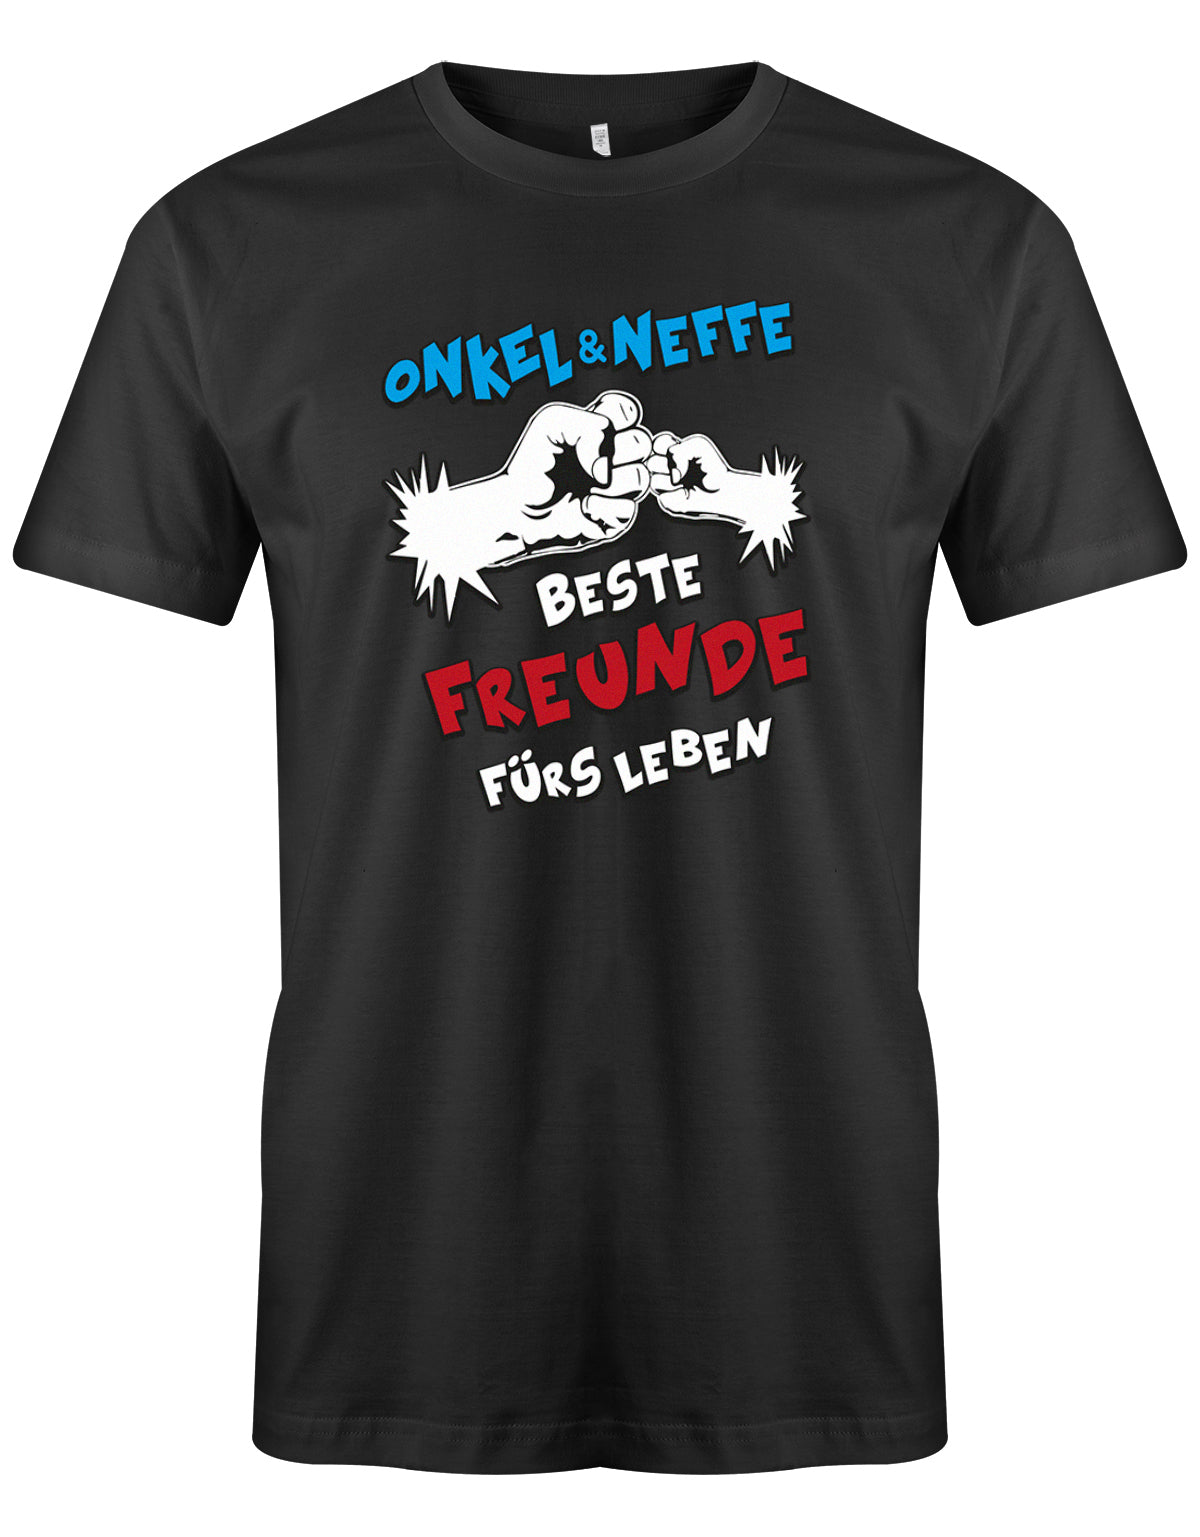 Onkel und Neffe - Beste Freunde fürs Leben - Comic - Herren T-Shirt